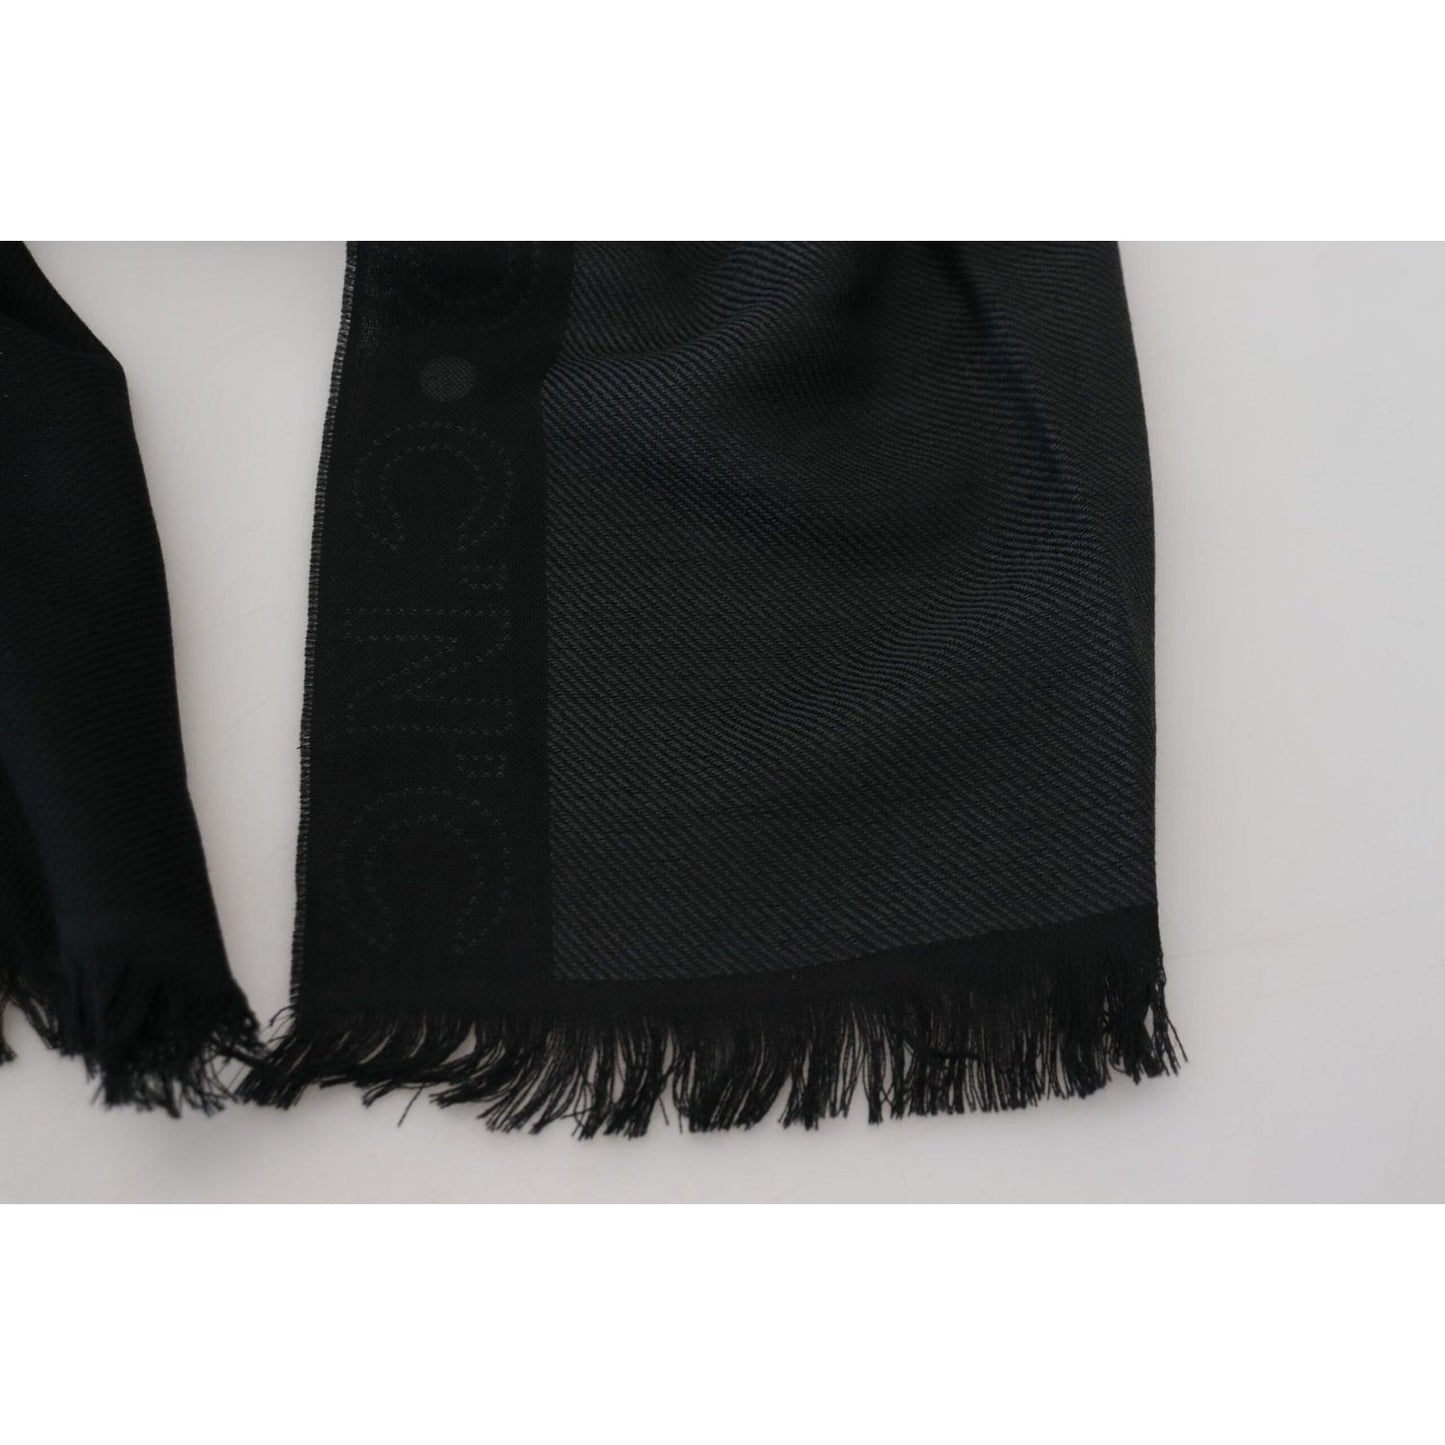 Costume National Black Wool Shawl Foulard Fringes Scarf black-wool-shawl-foulard-fringes-scarf IMG_8174-scaled-db4d045e-74e.jpg